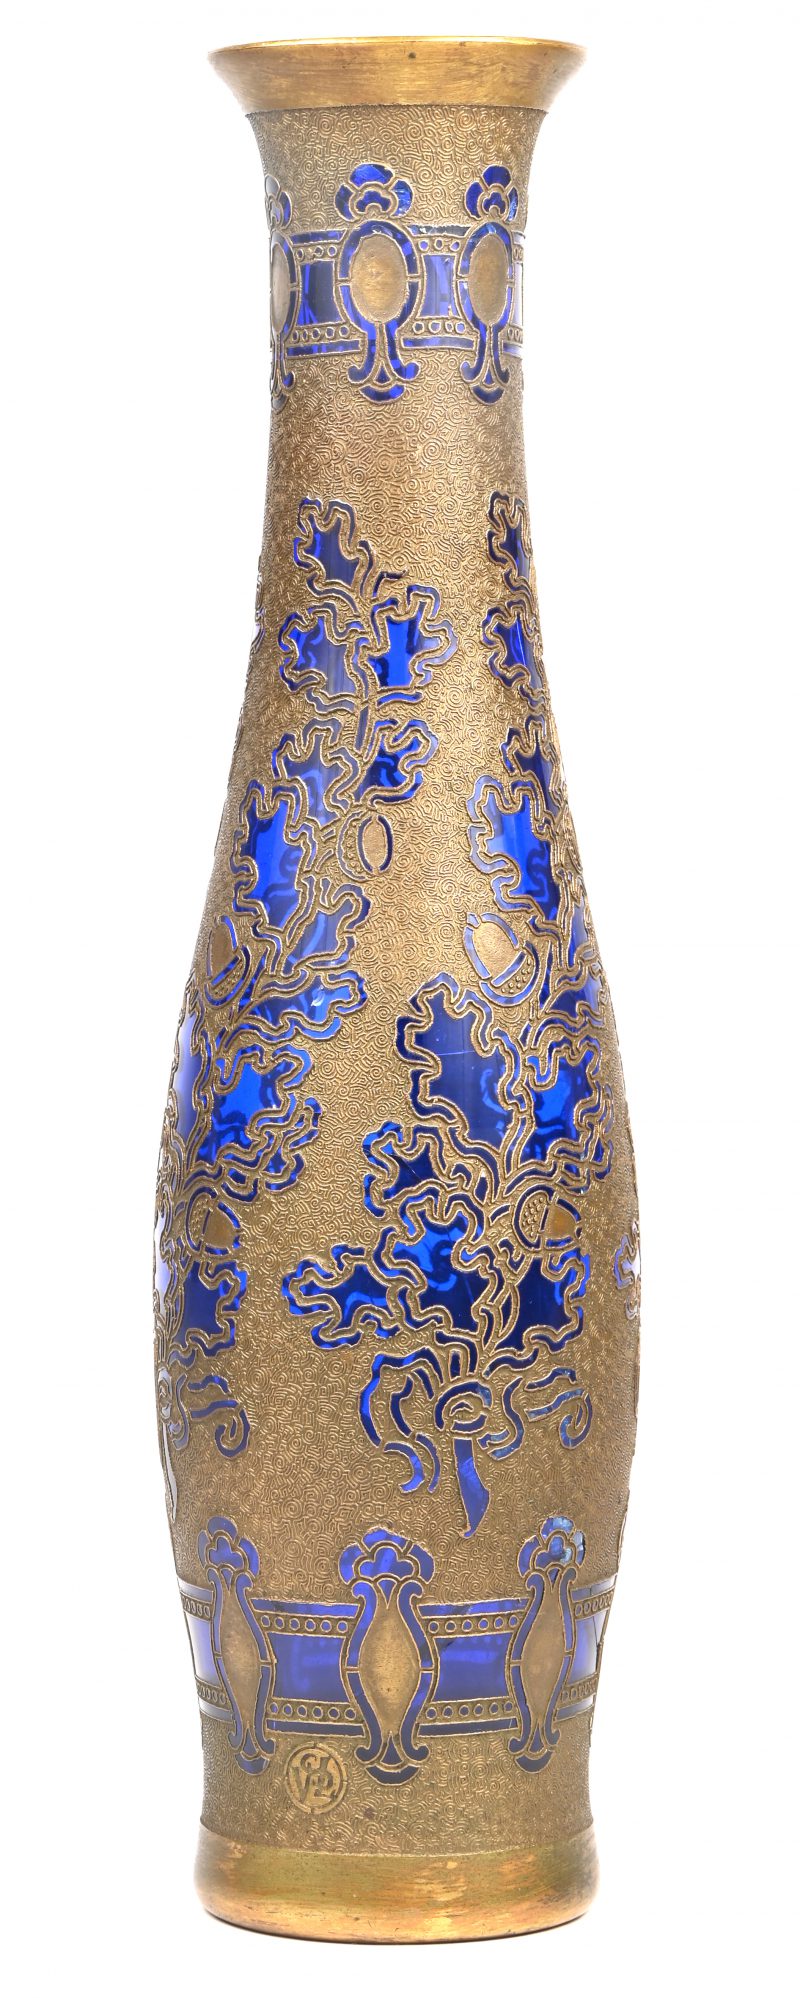 Een art nouveau vaas van blauw glas in koper gevat met floraal motief. Omstreeks 1900. Gemerkt. Bovenrand glas gebroken en gelijmd.